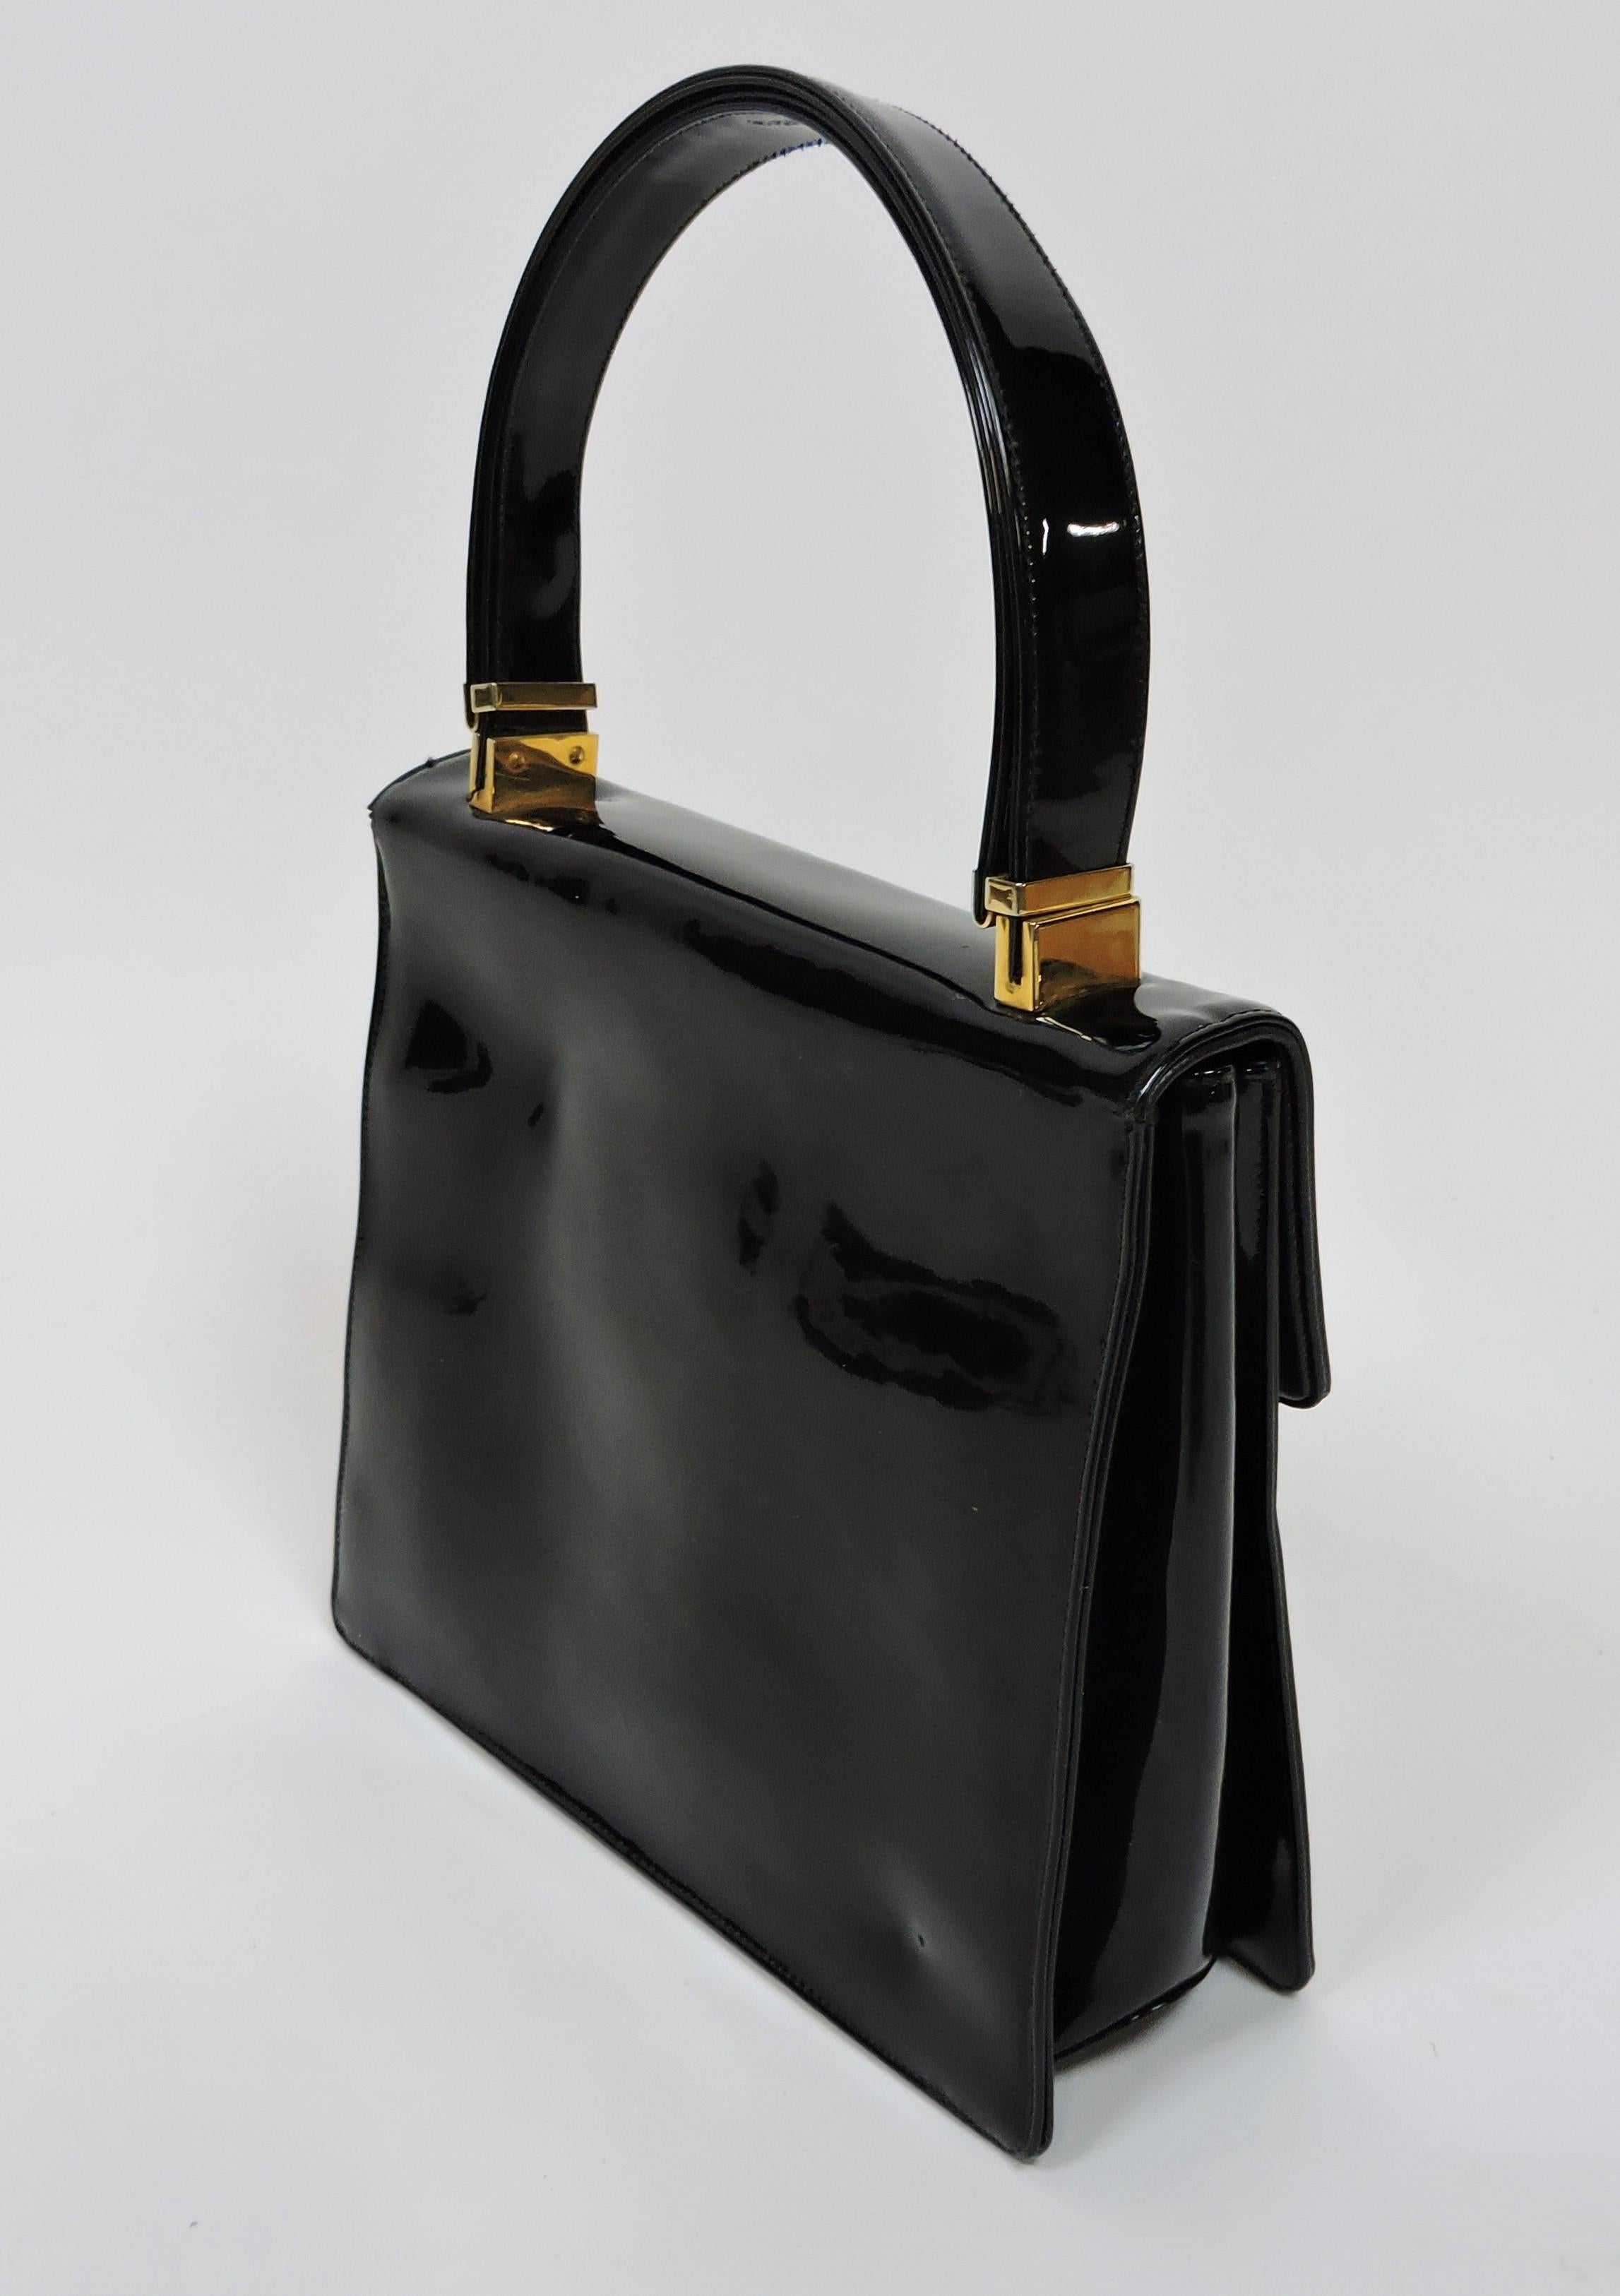 Koret Mid-Century Modern Black Patent Leather and Brass Handbag or Shoulder Bag For Sale 1